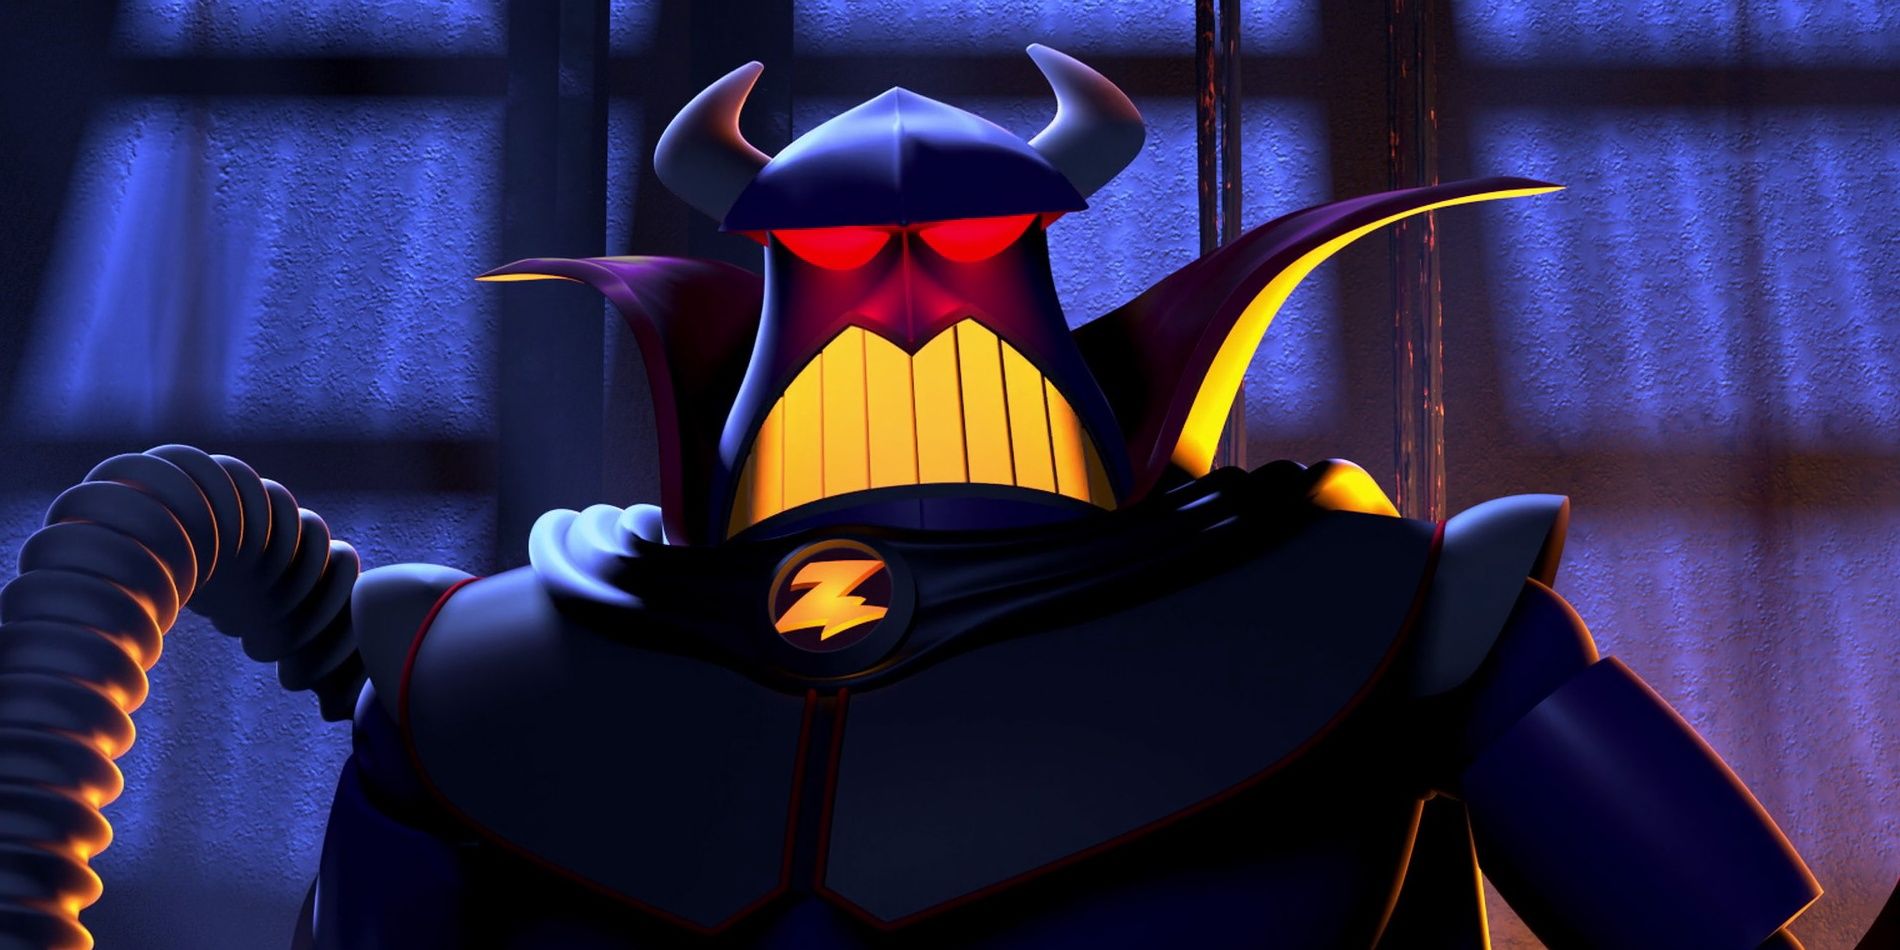 Emperor Zurg looks menacing in Toy Story